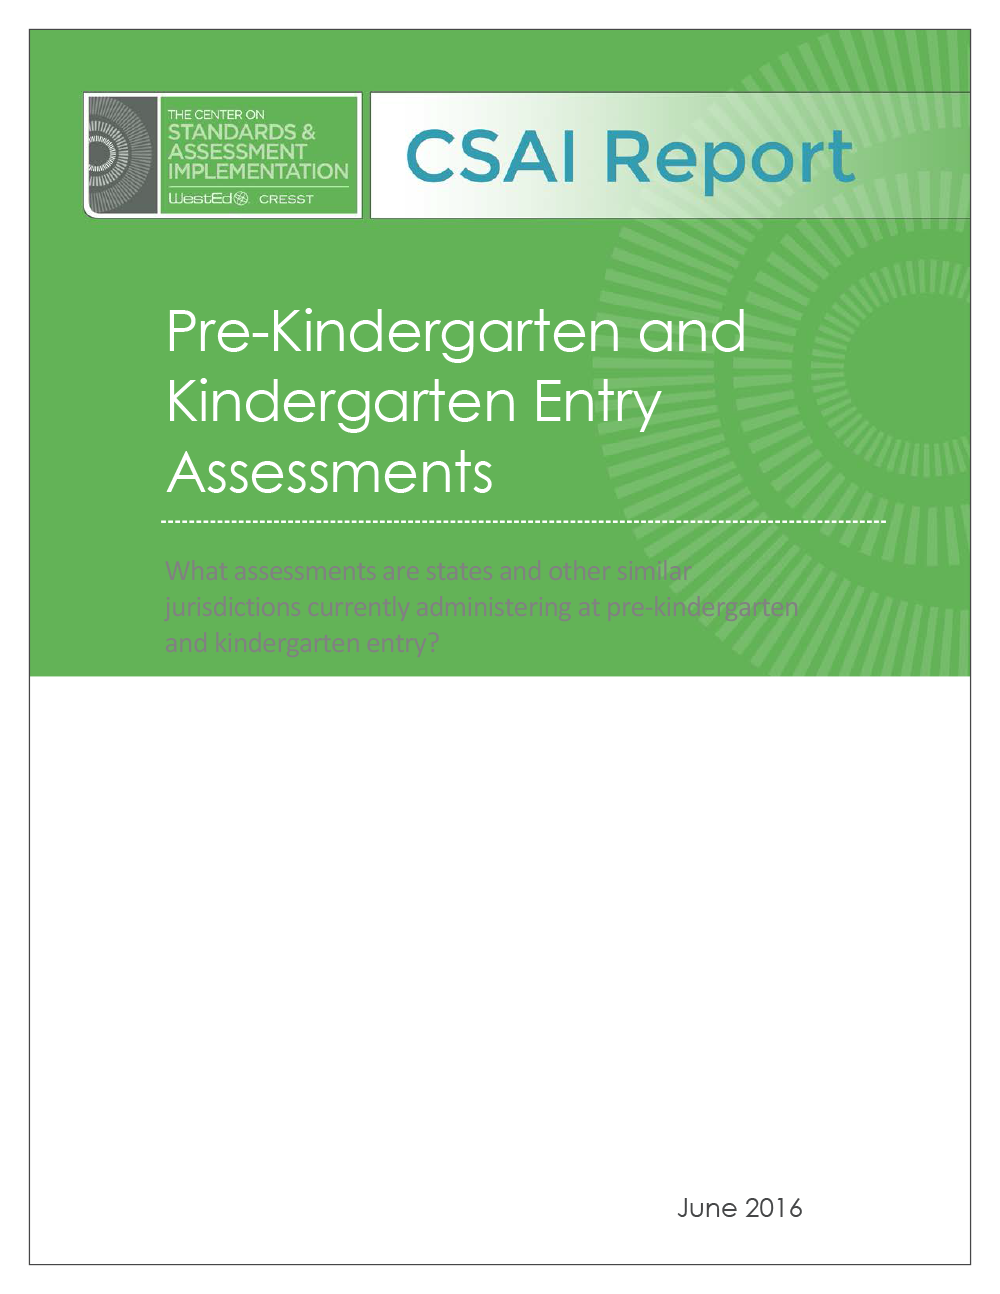 Cover Pre-Kindergarten and Kindergarten Assessments